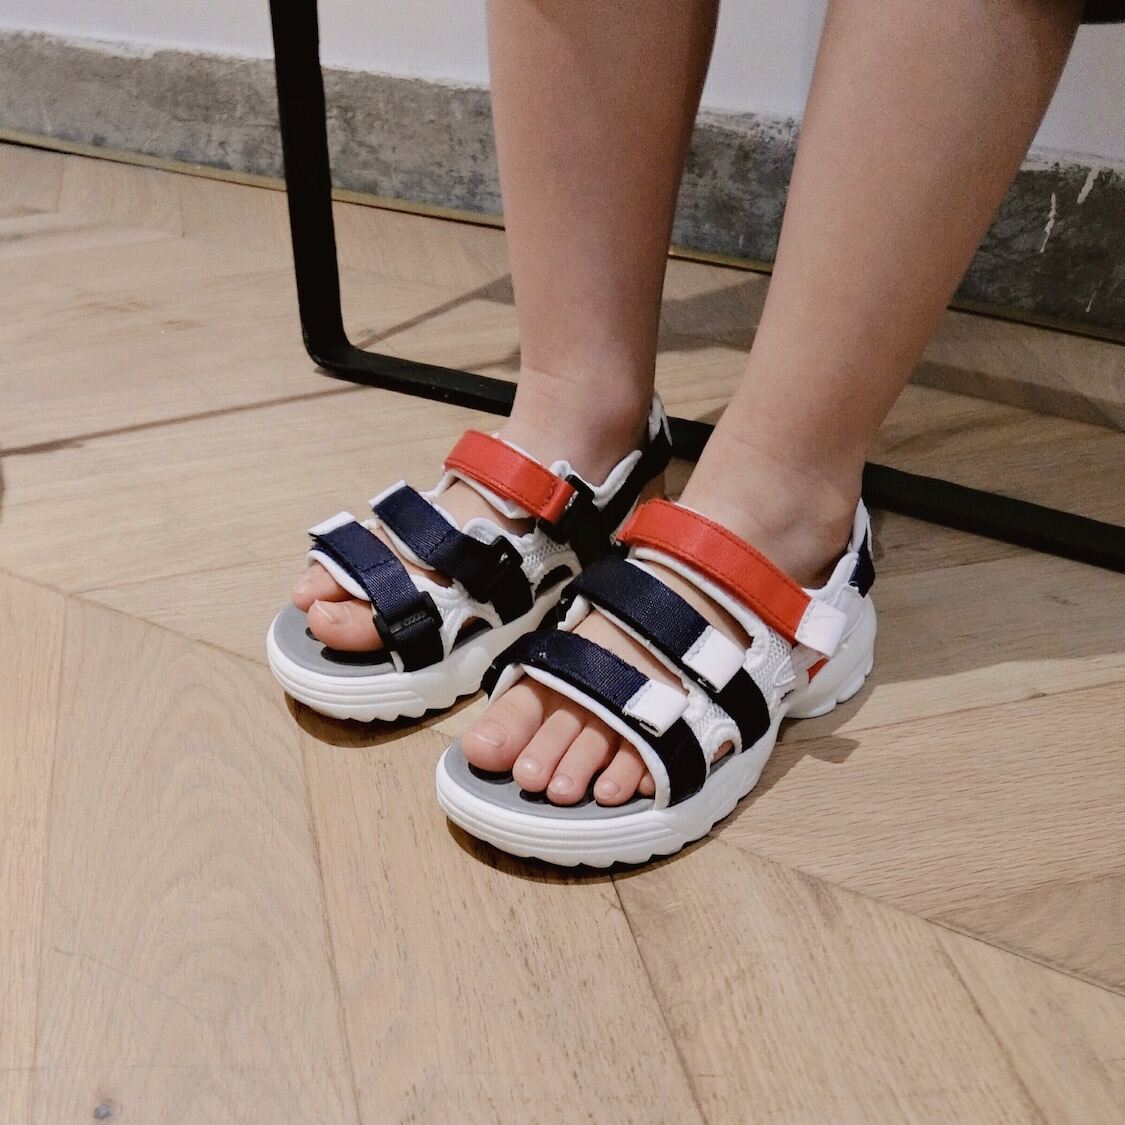 2021 Mùa Hè Mới Giày Sandal Trẻ Em Bé Trai Dép Hàn Quốc Lớn Và Trẻ Em Thể Thao Bãi Biển Thường Cô Gái thumbnail